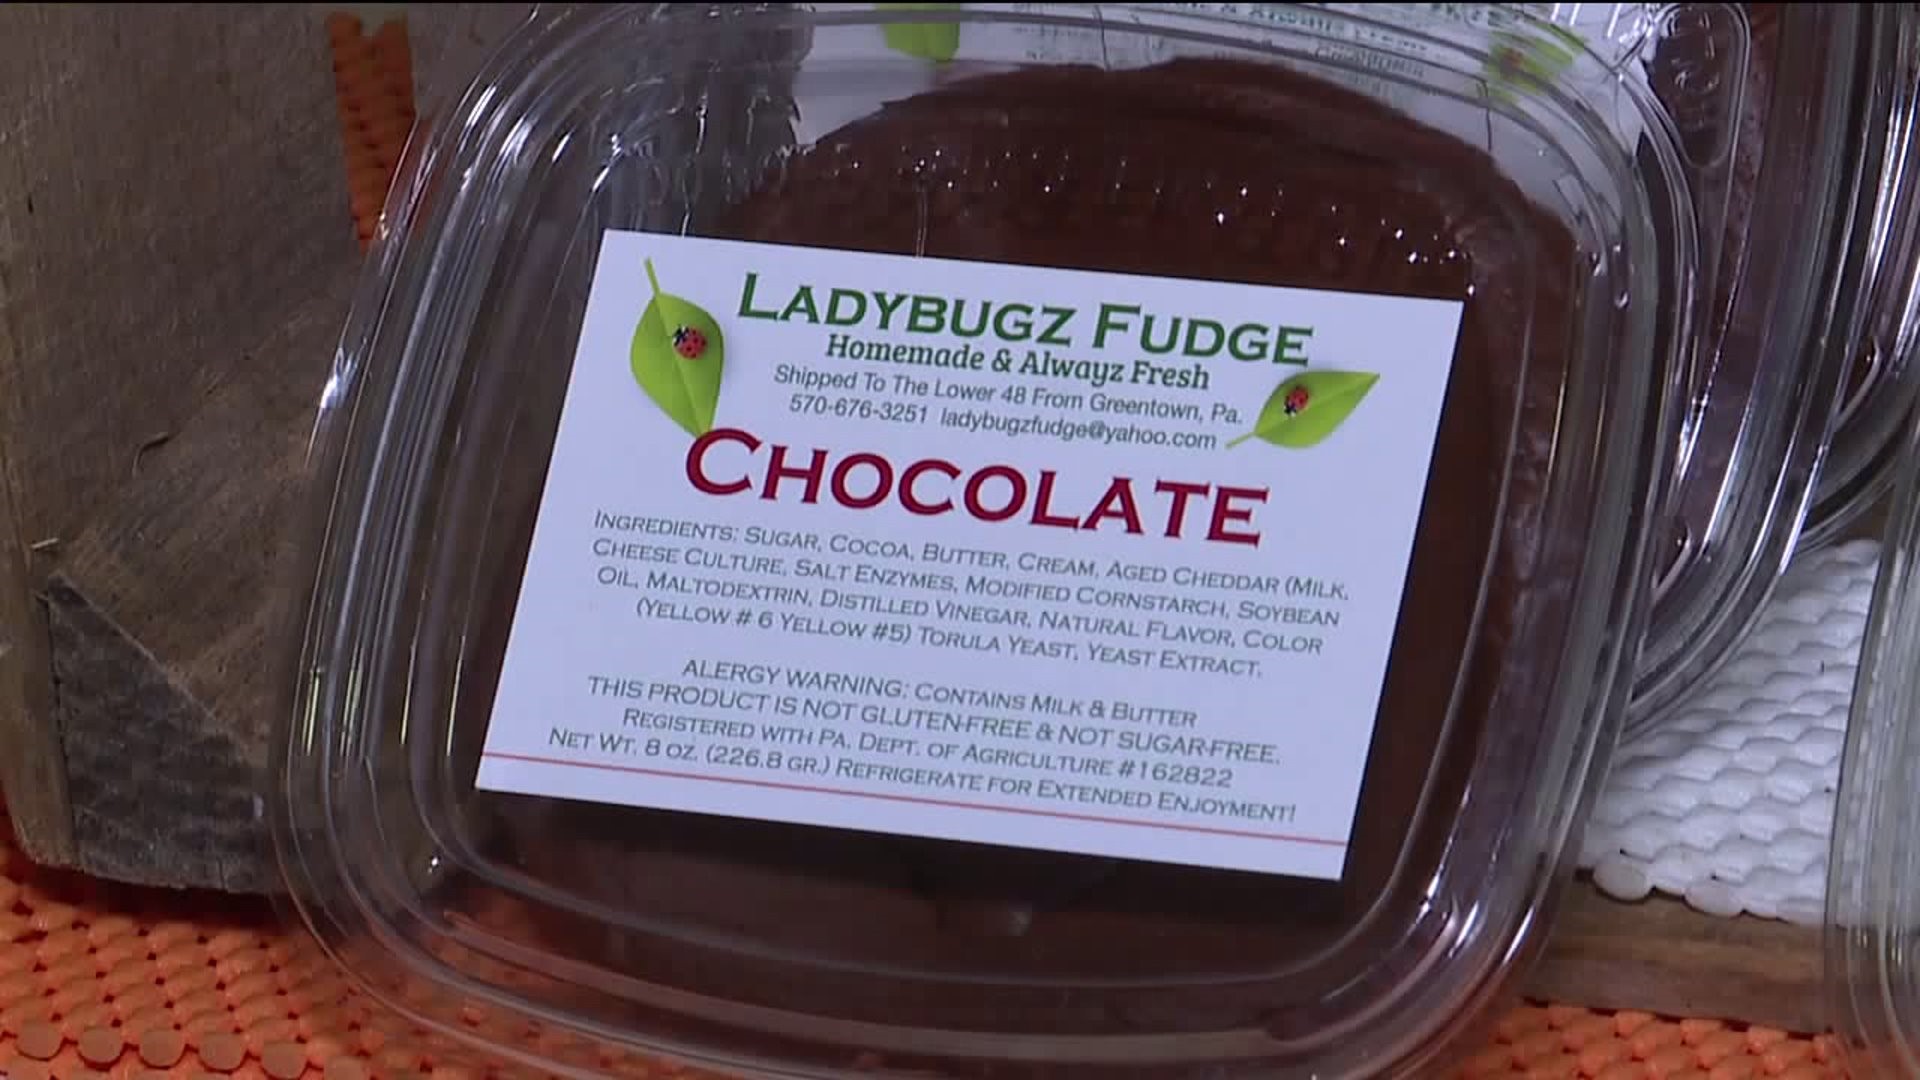 Taste Test: Ladybugz Fudge